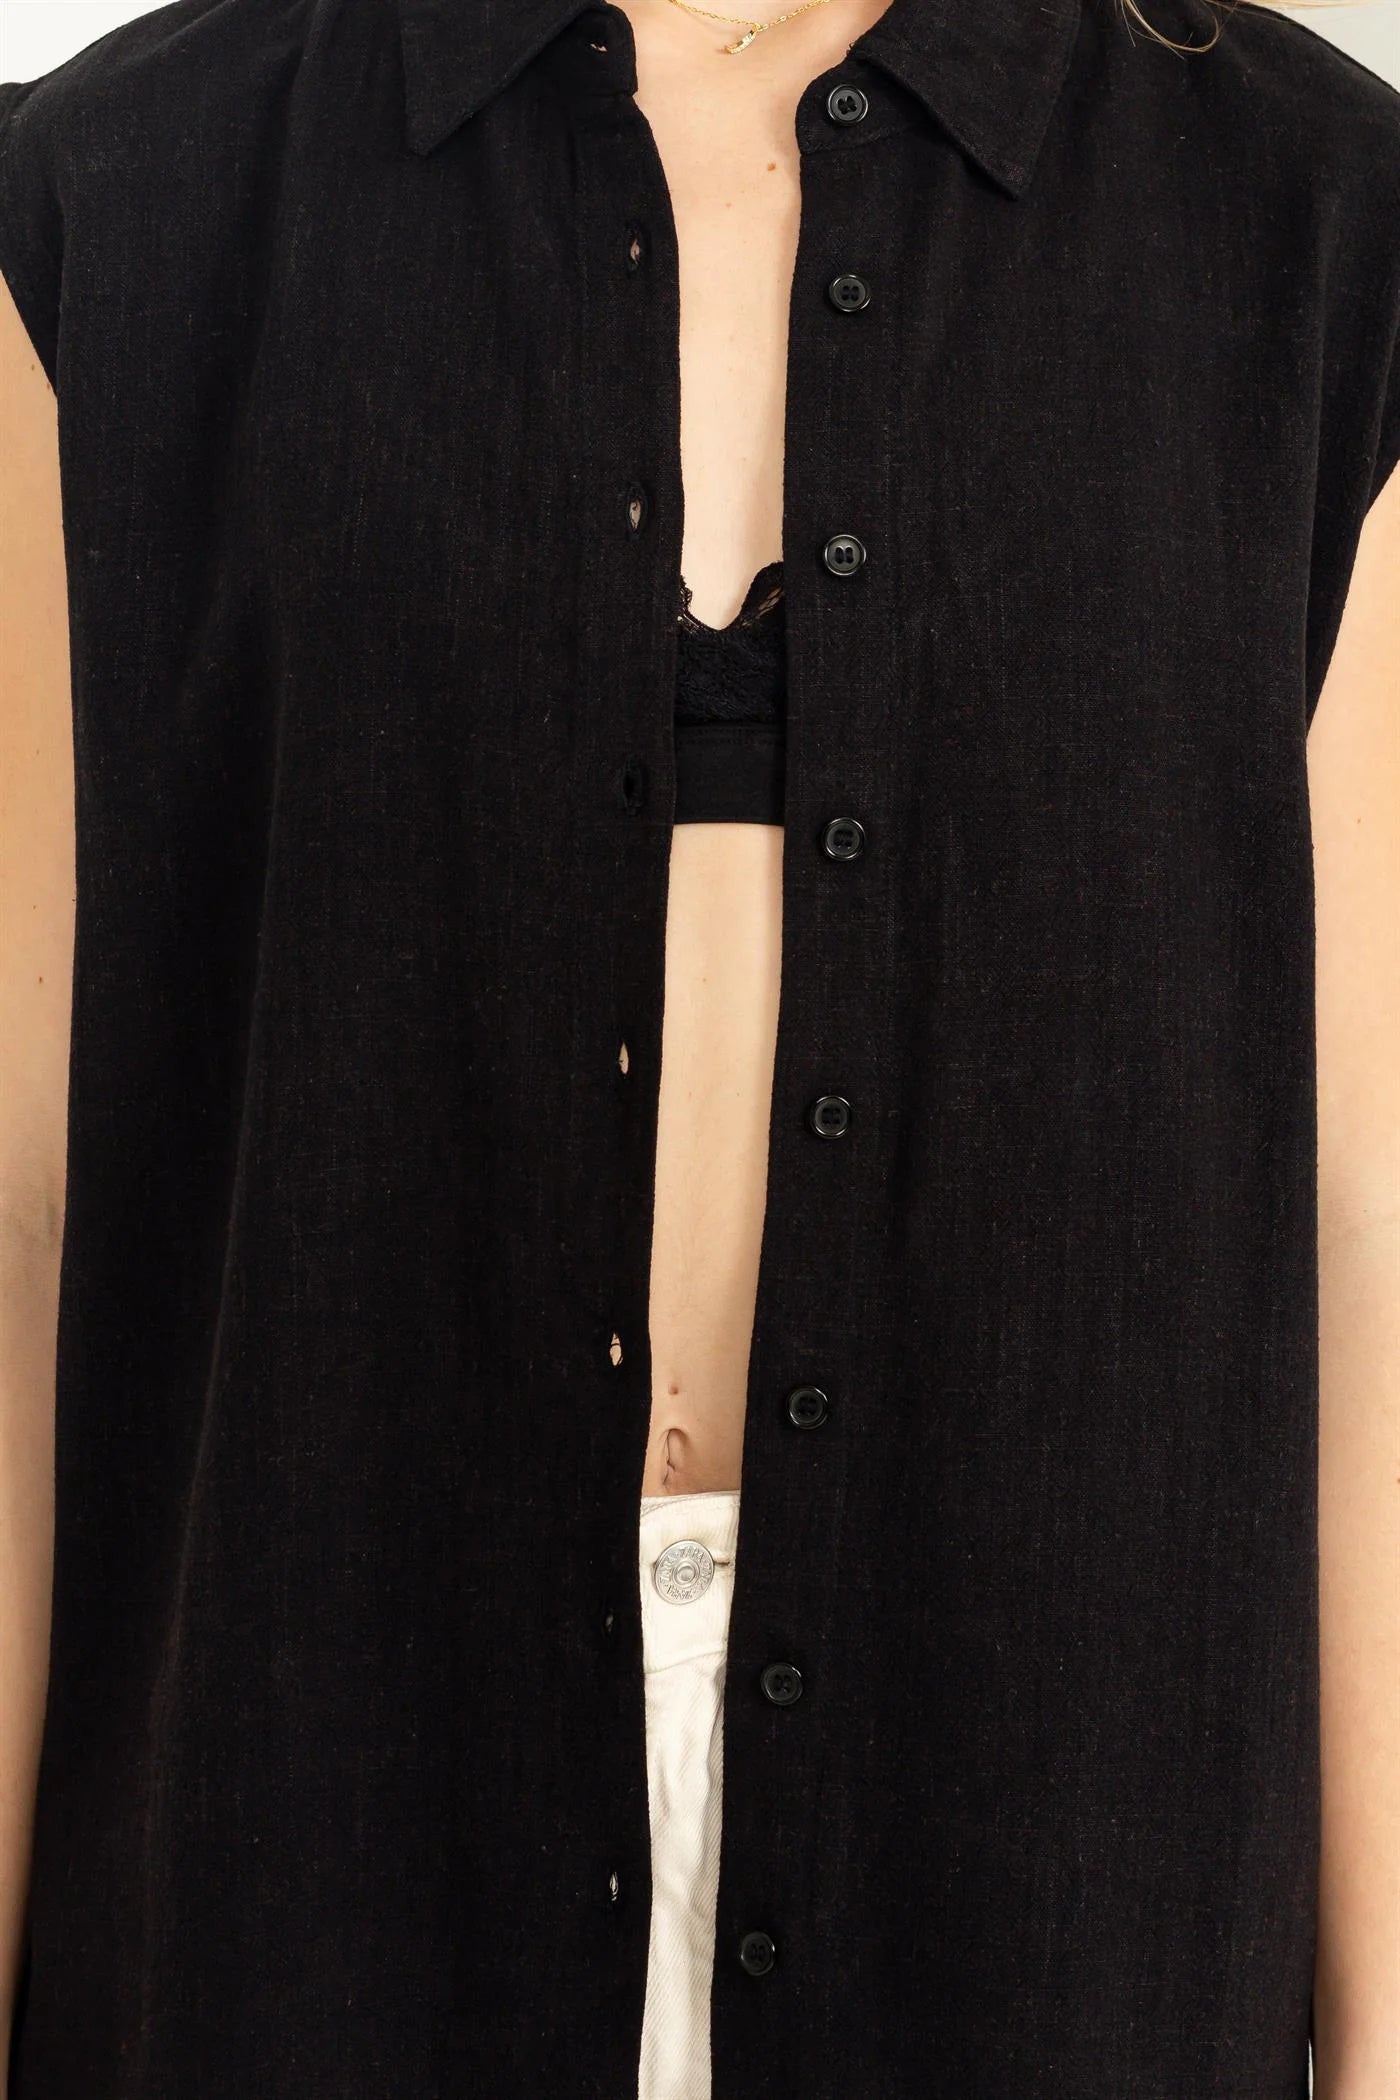 Darling Linen Button Up Sleeveless Shirt